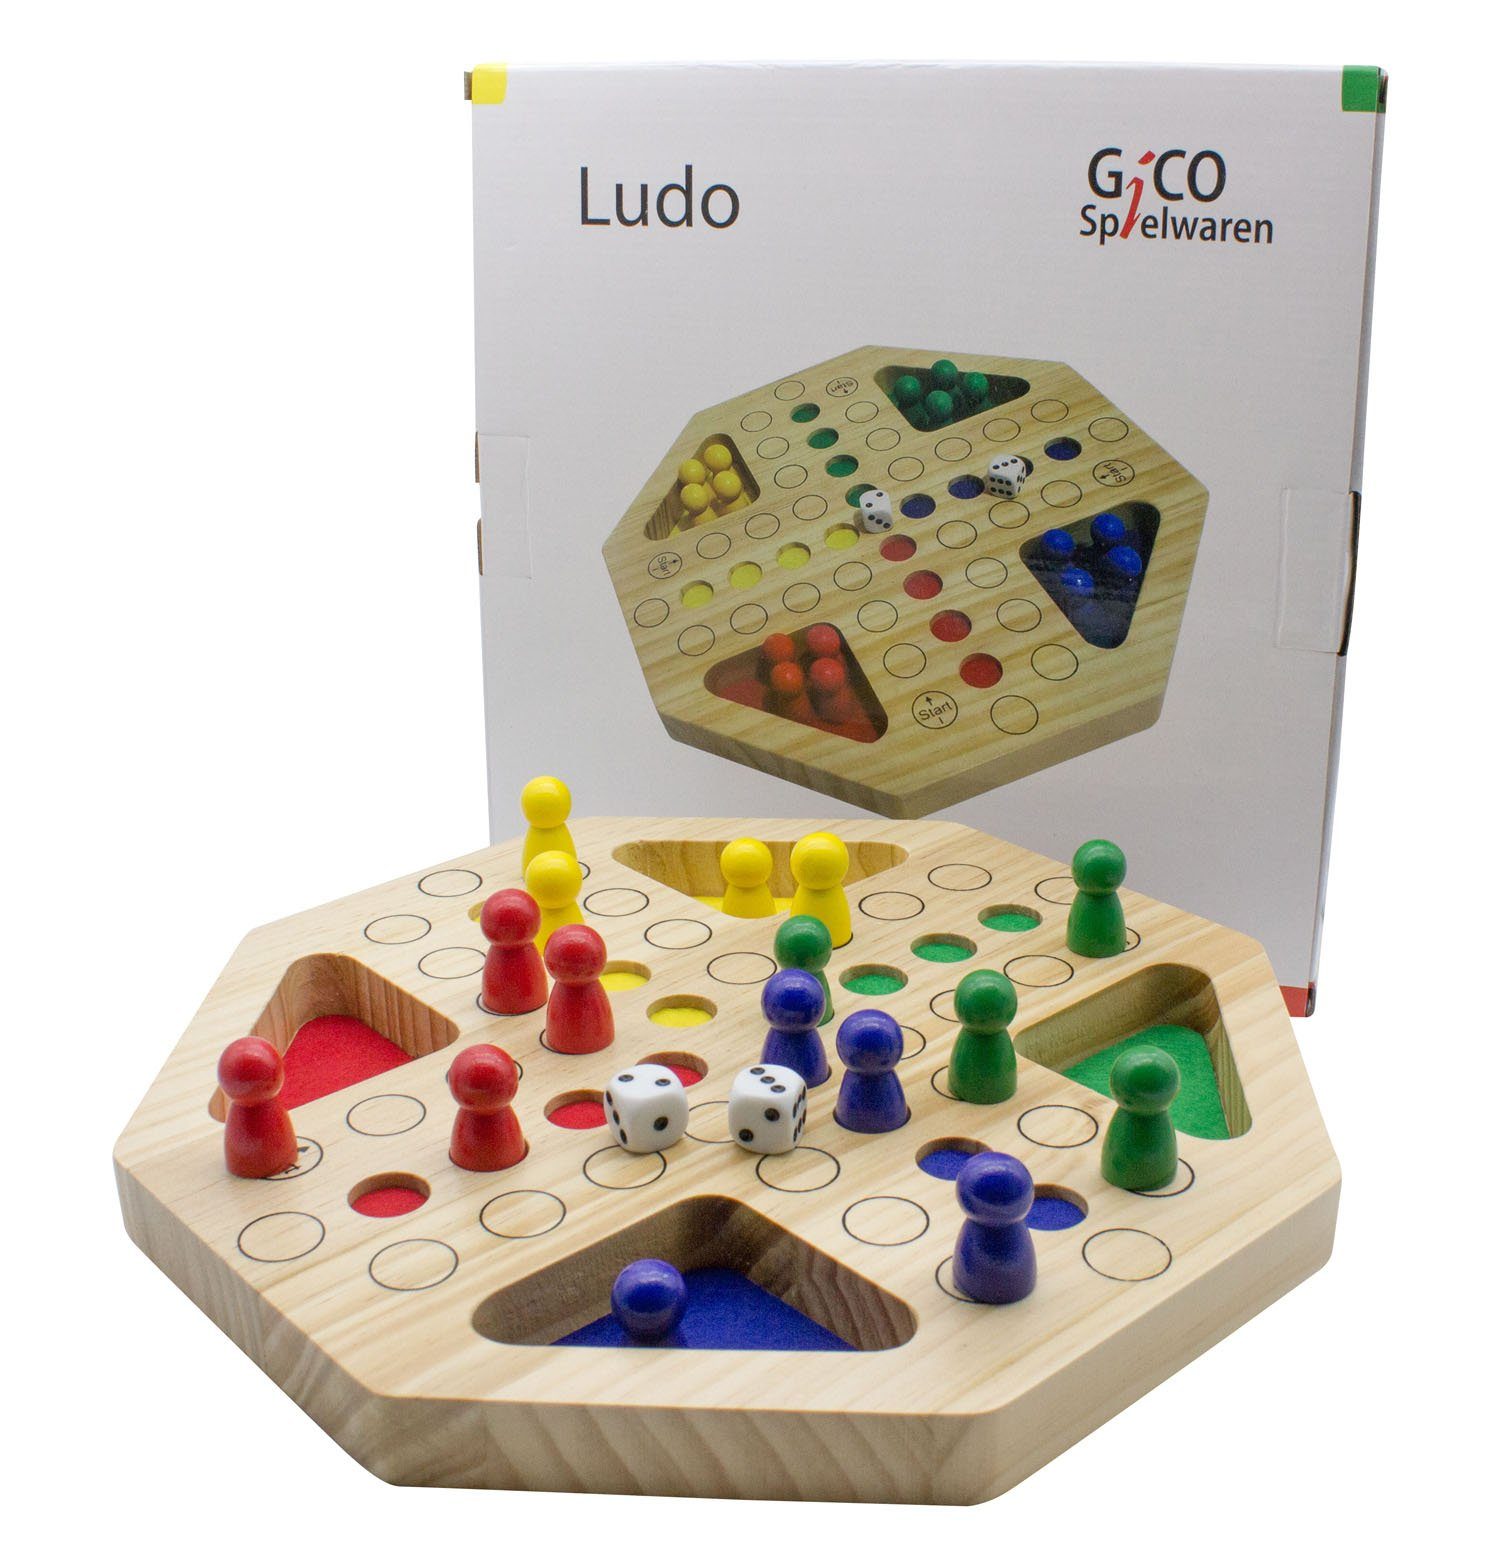 Holz. für GICO Ludo Das aus GICO XL und Spielesammlung, Gesellschaftsspiel bekannte Jung